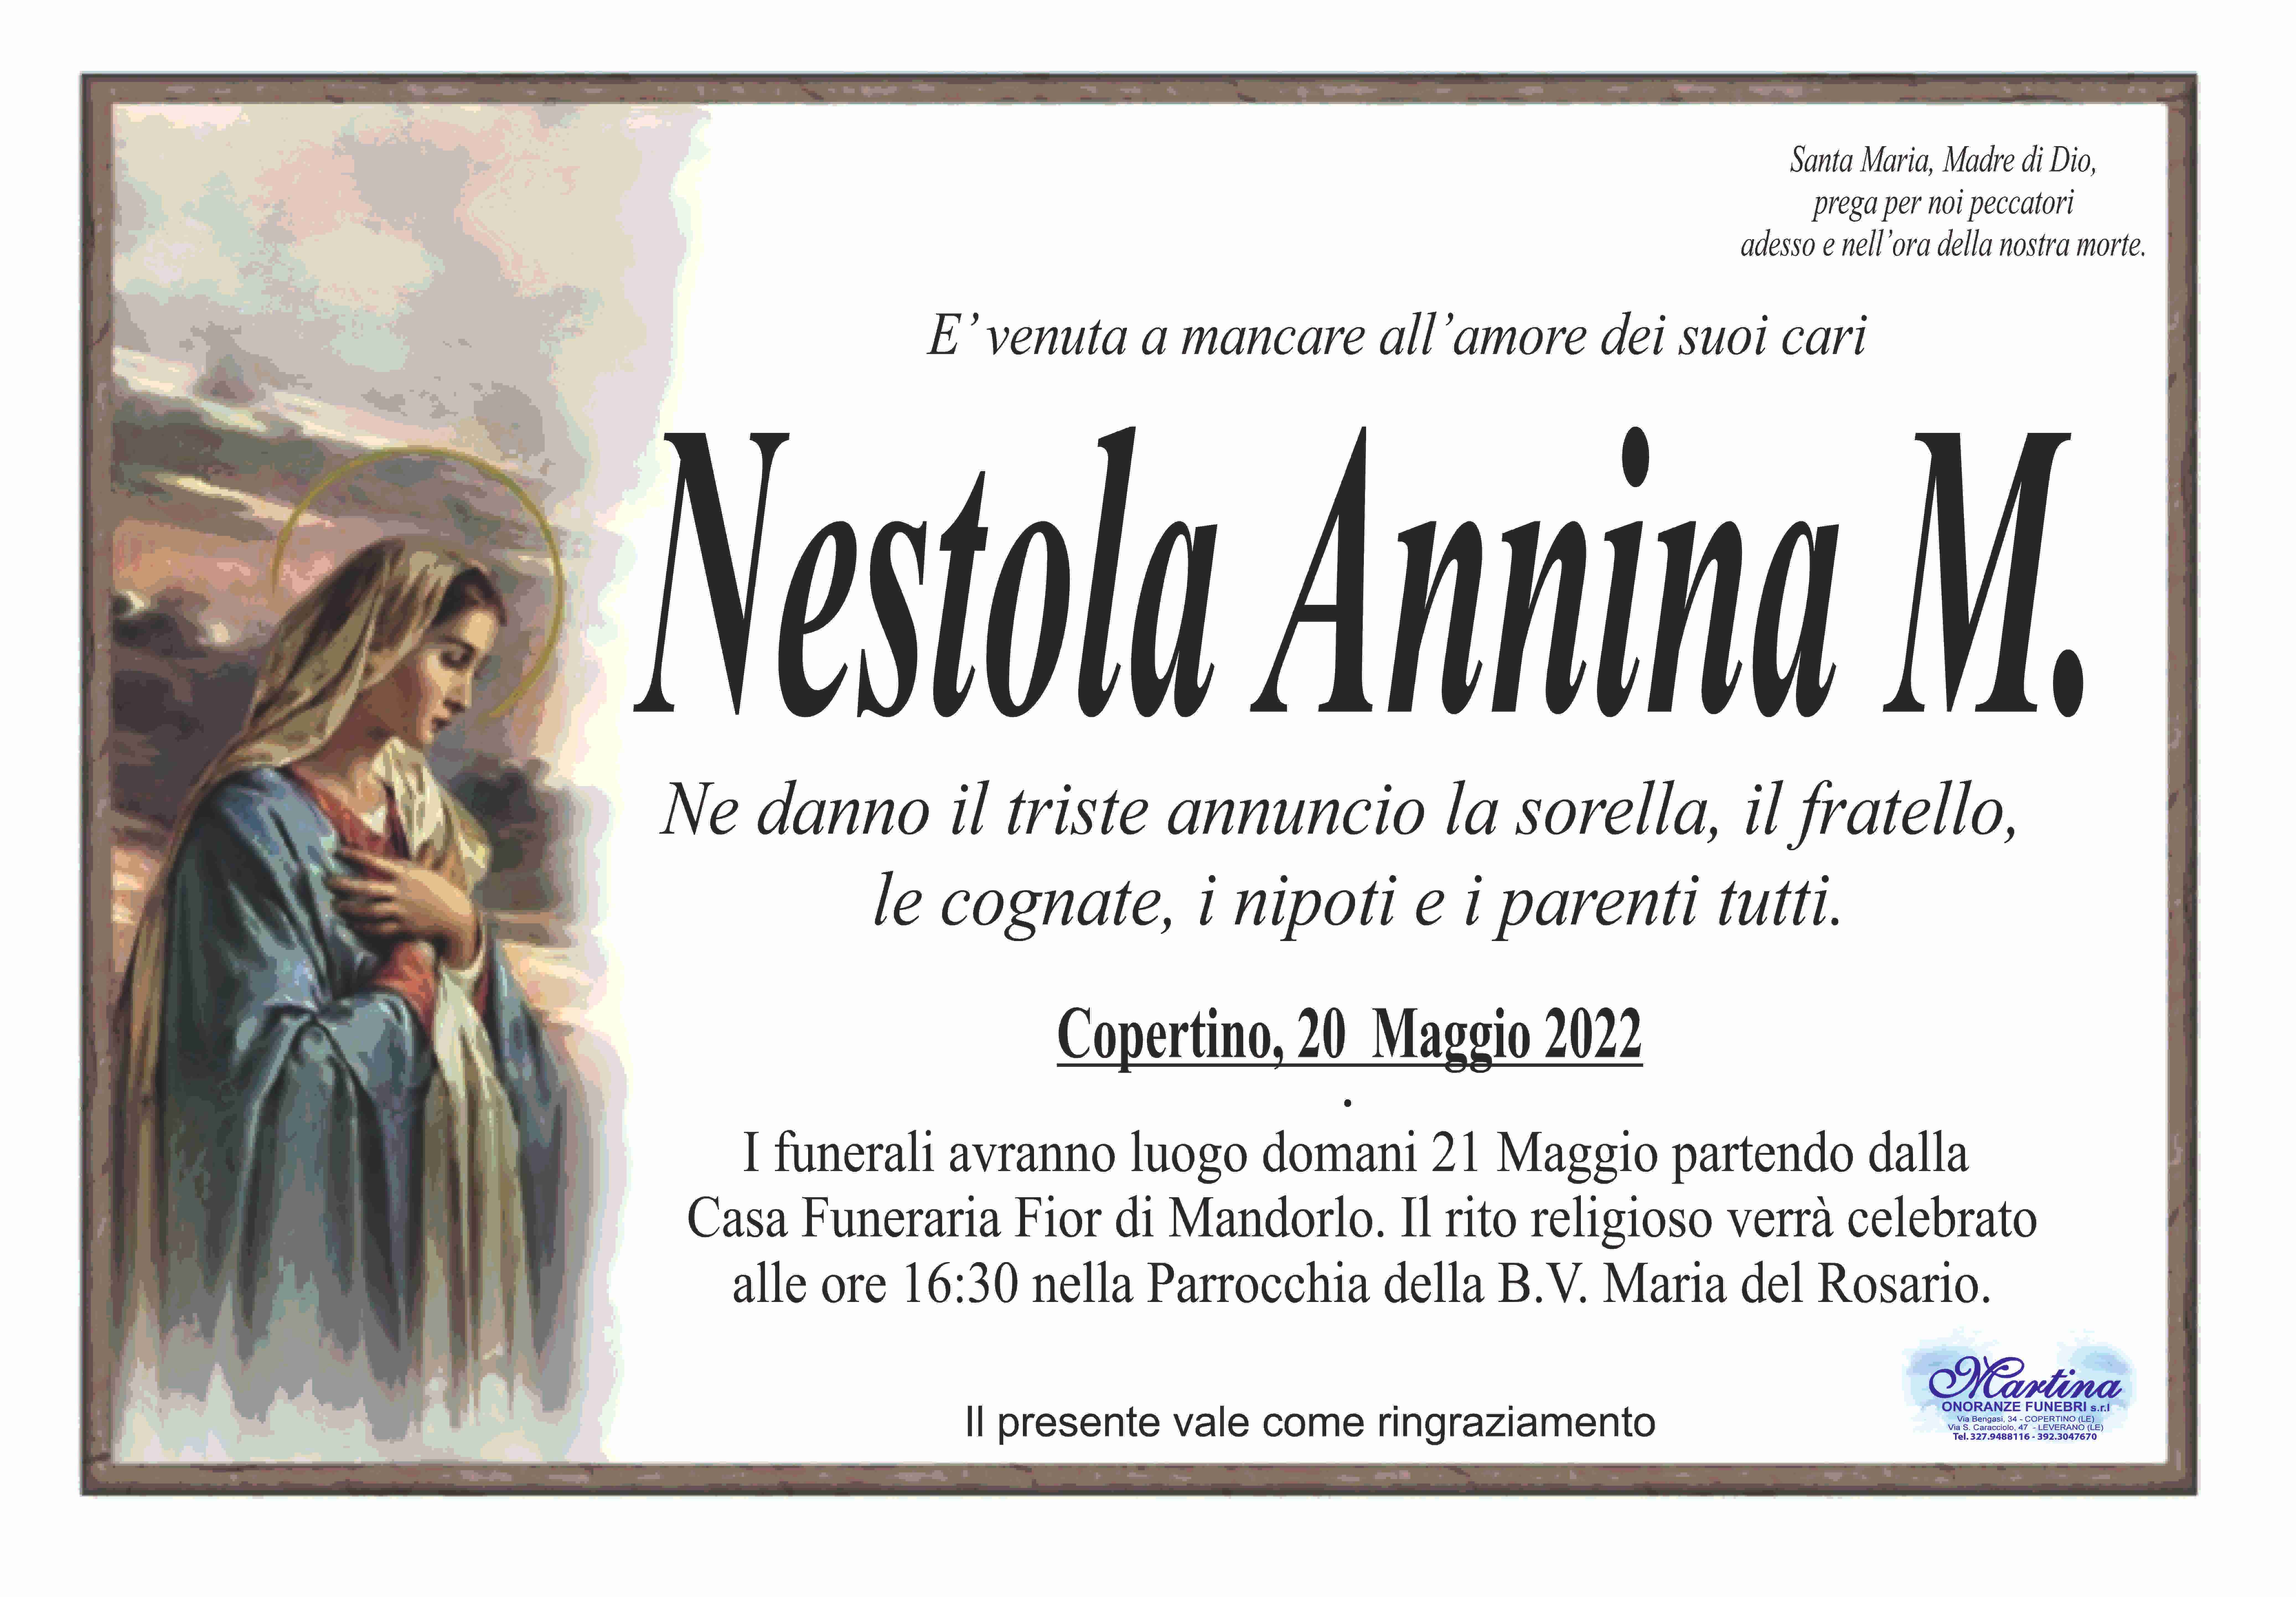 Annina Maria Nestola